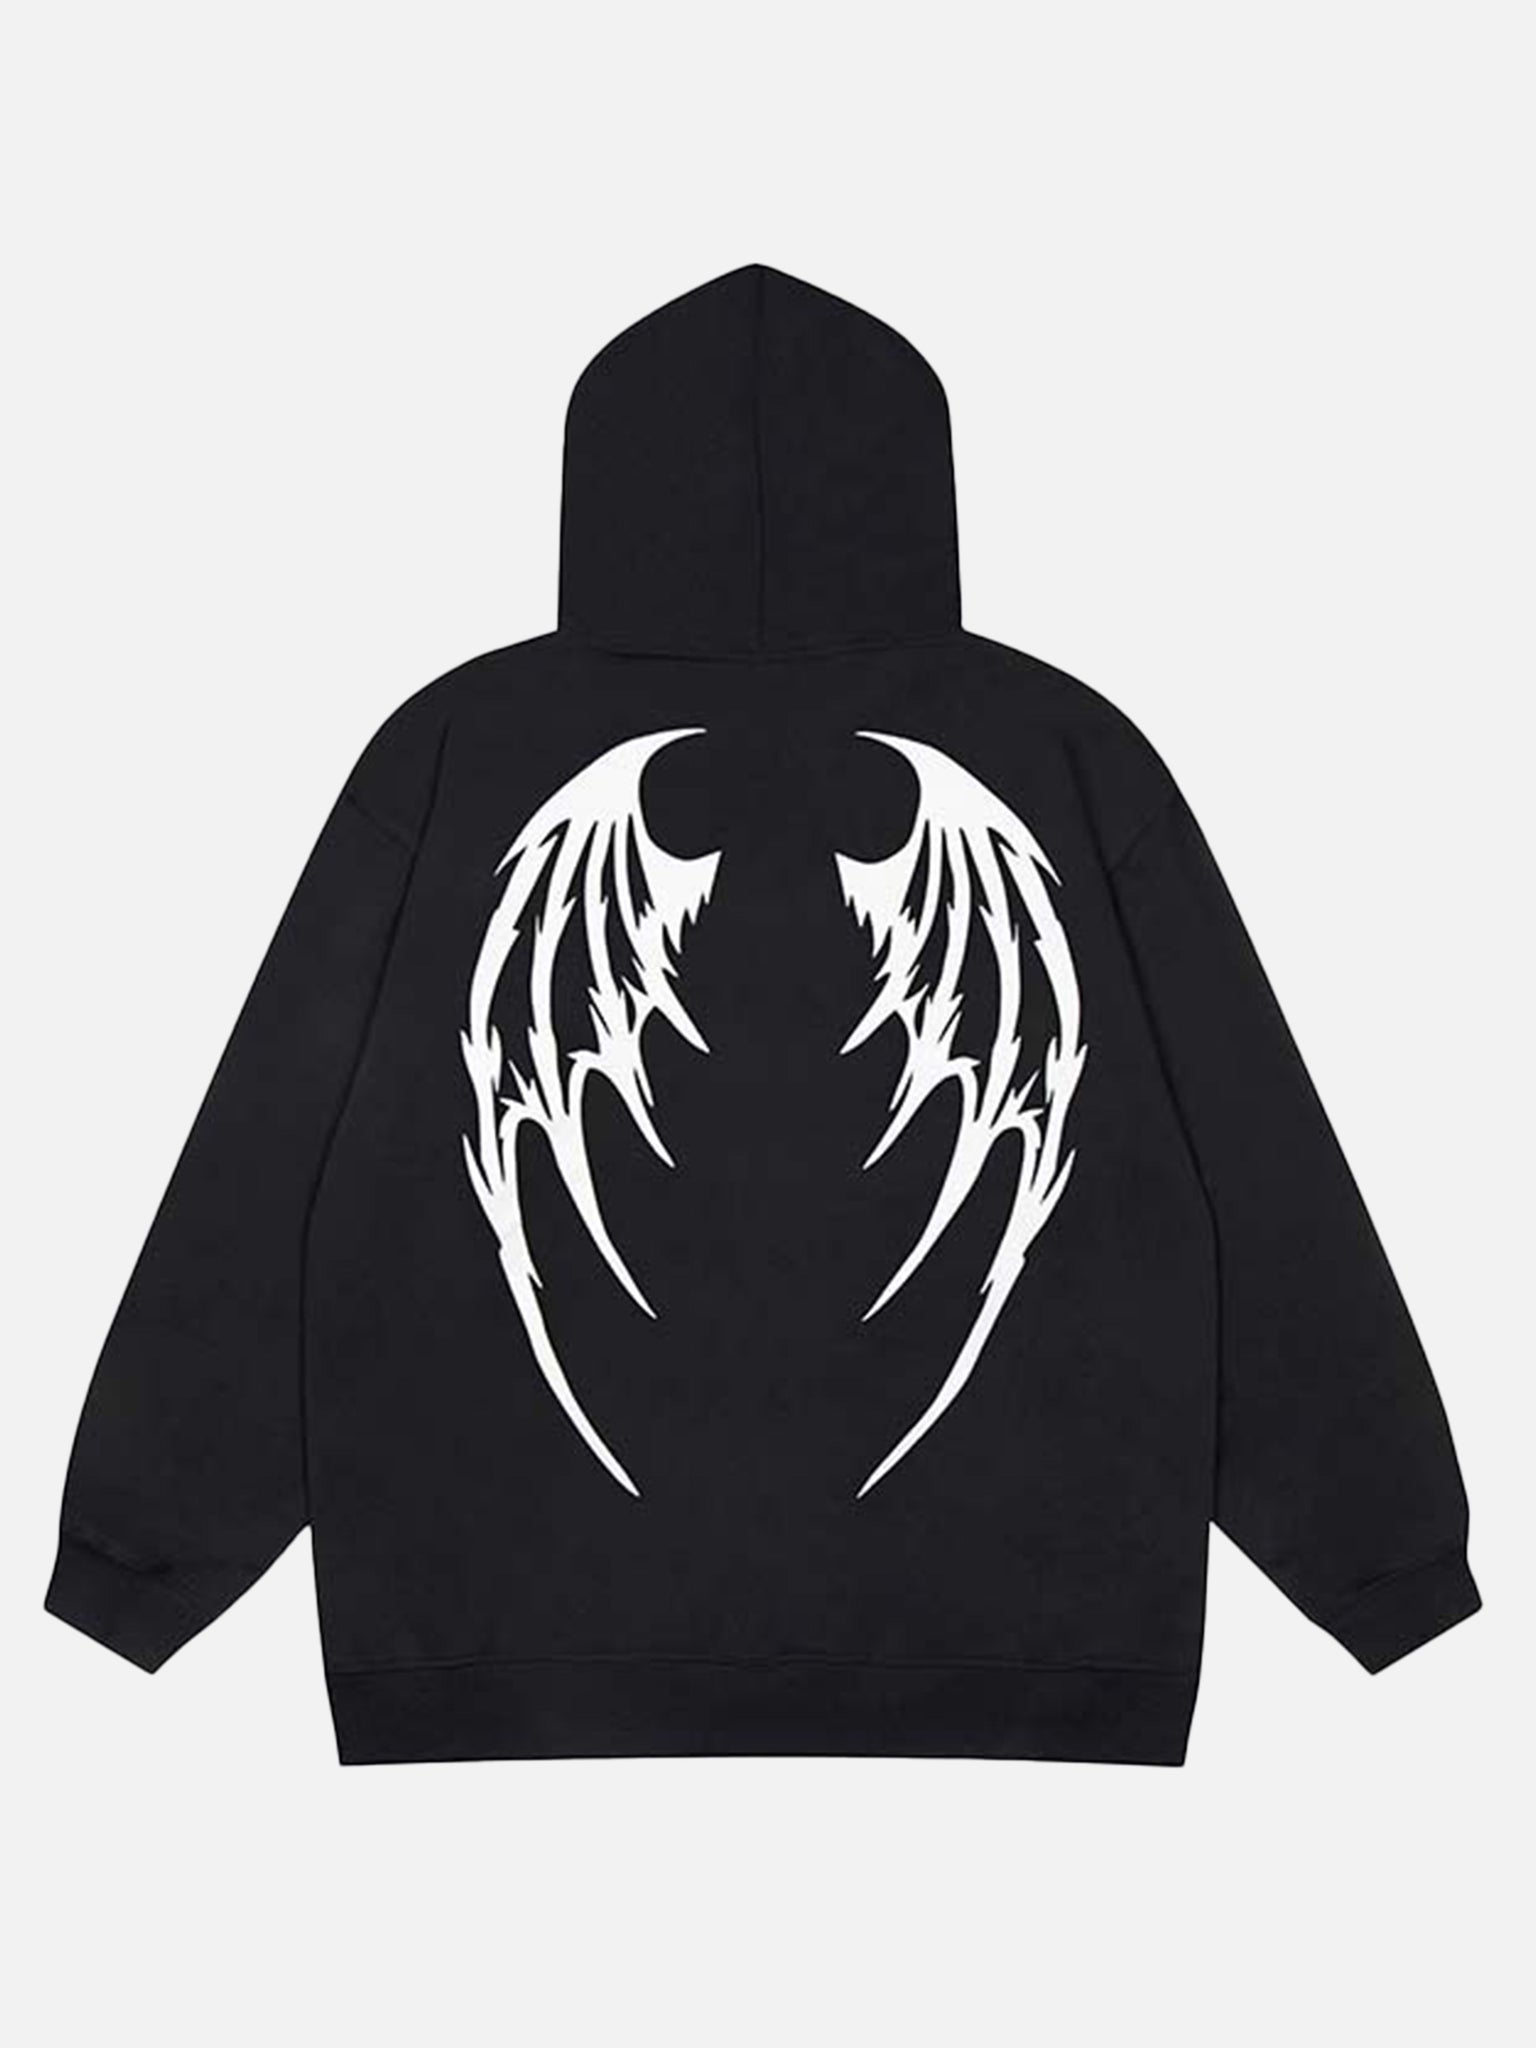 The Supermade American Devil Angel Print Zipper Padded Hoodie Jacket